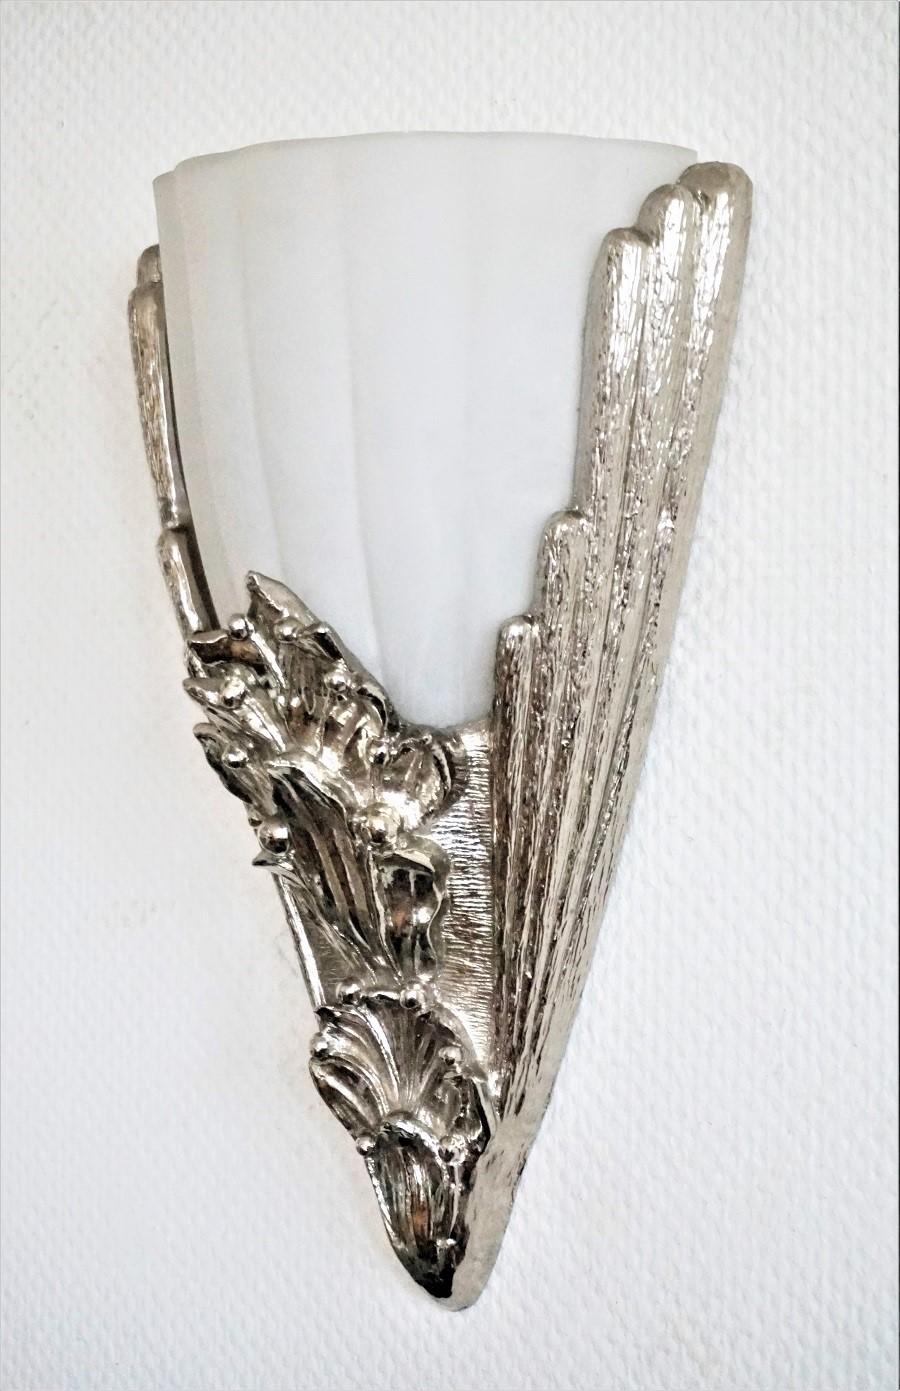 Große Art-déco-Wandleuchte aus mattiertem Glas, Frankreich 1930-1939. Elegantes Gestell aus Aluminiumguss mit verchromter Oberfläche. Sie nimmt eine große E27-Glühbirne auf.
In sehr gutem Zustand und neu verkabelt.
Maße: Höhe 17